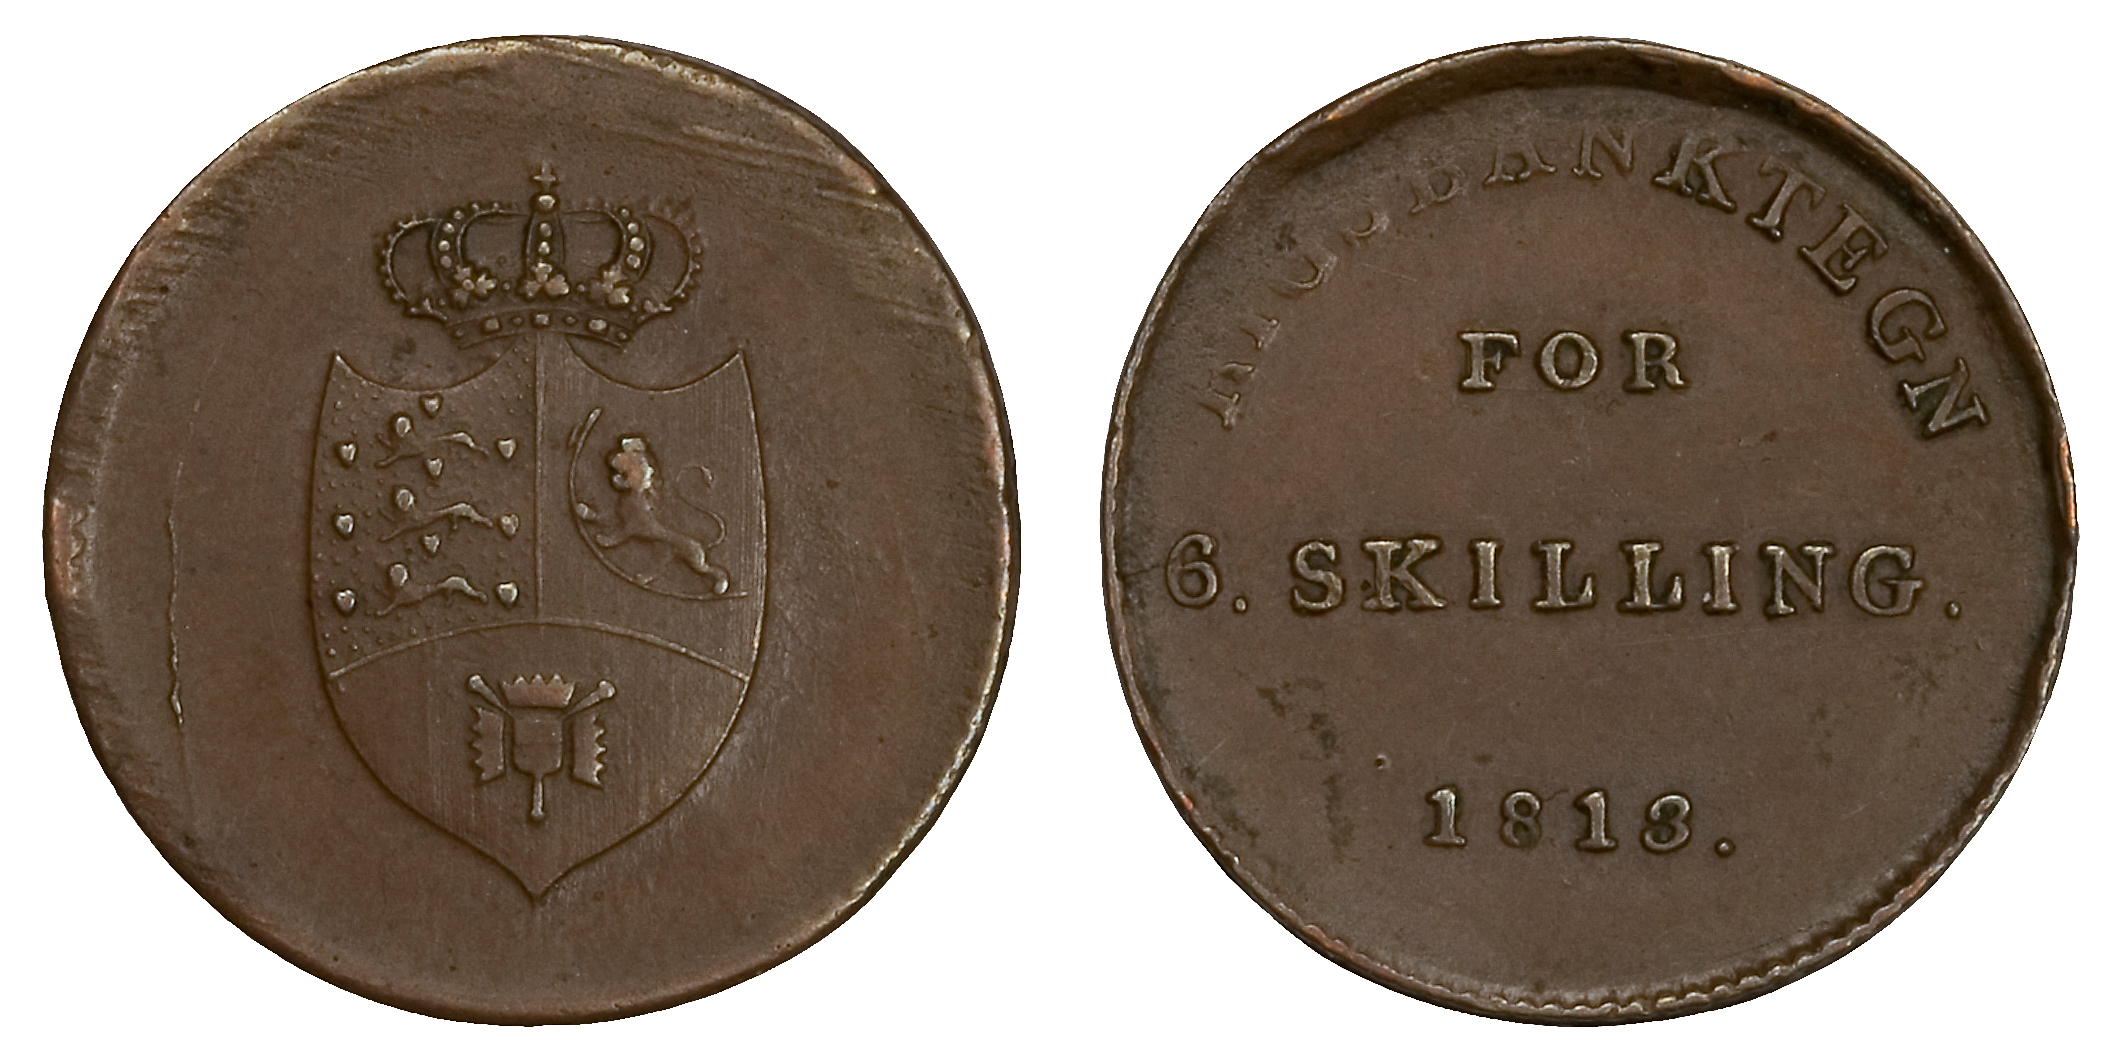 Riksbankstegn for 6. skilling. 1813. Denne mynten er preget i Danmark, og har en interessant historie verd å få med seg.